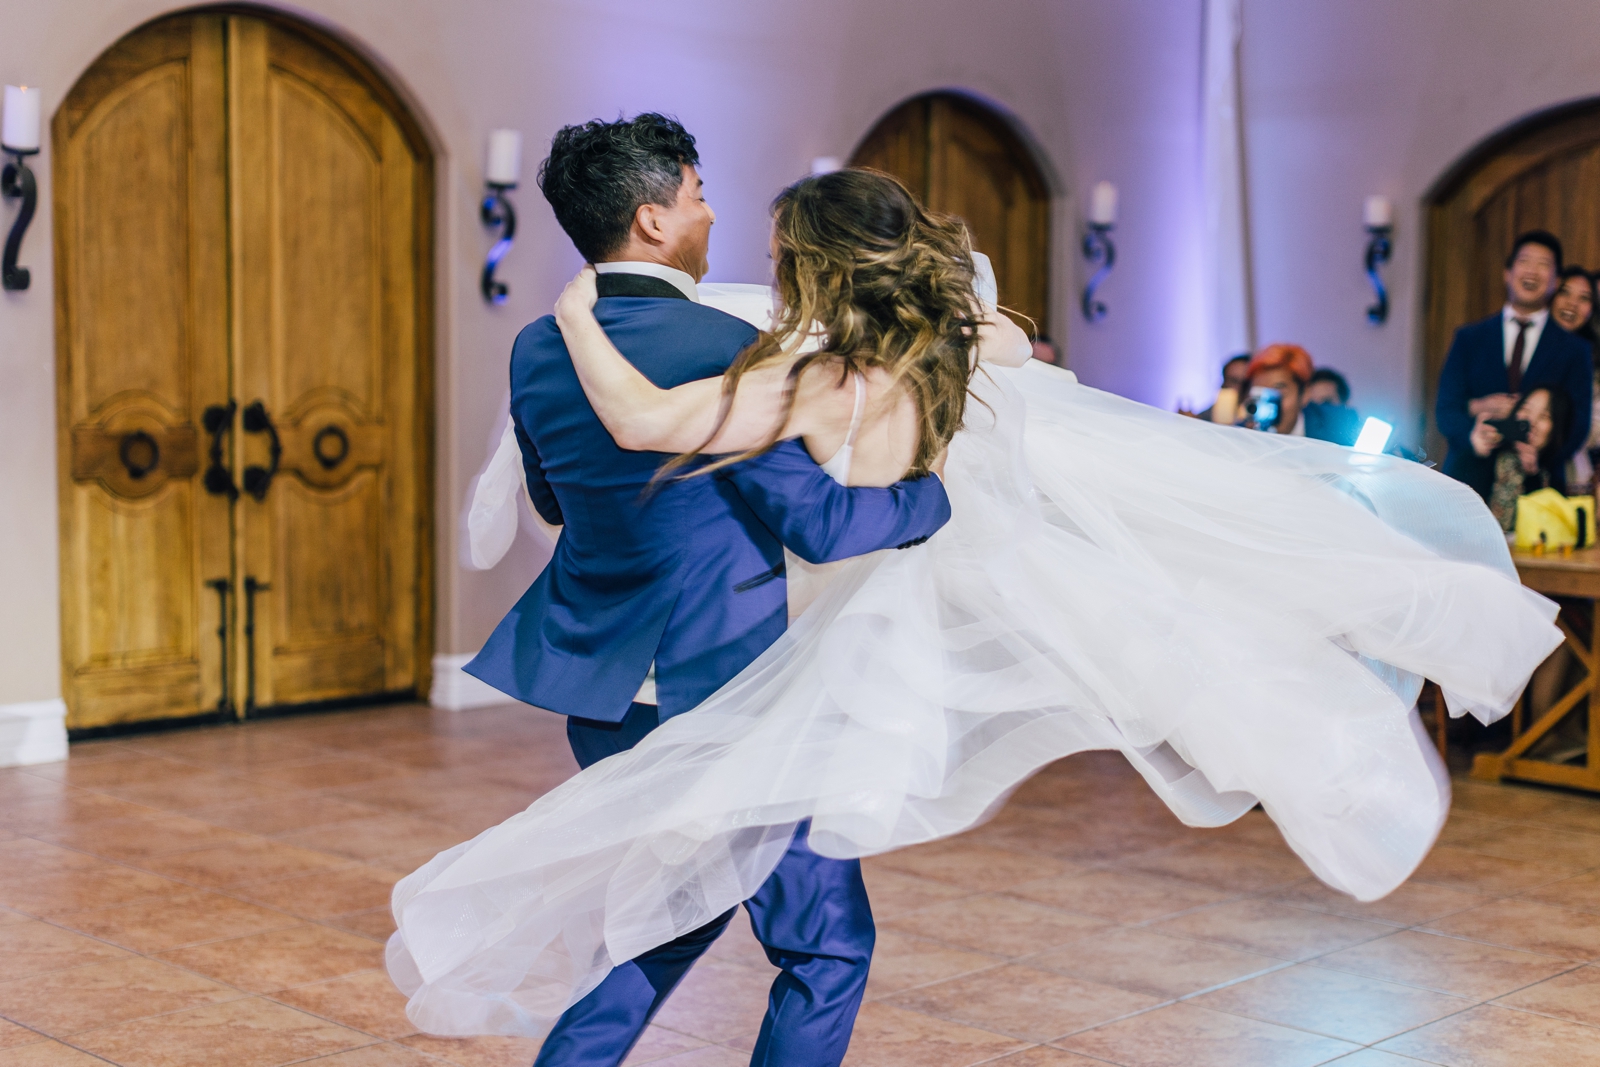 wedding reception dancing at villa de amore